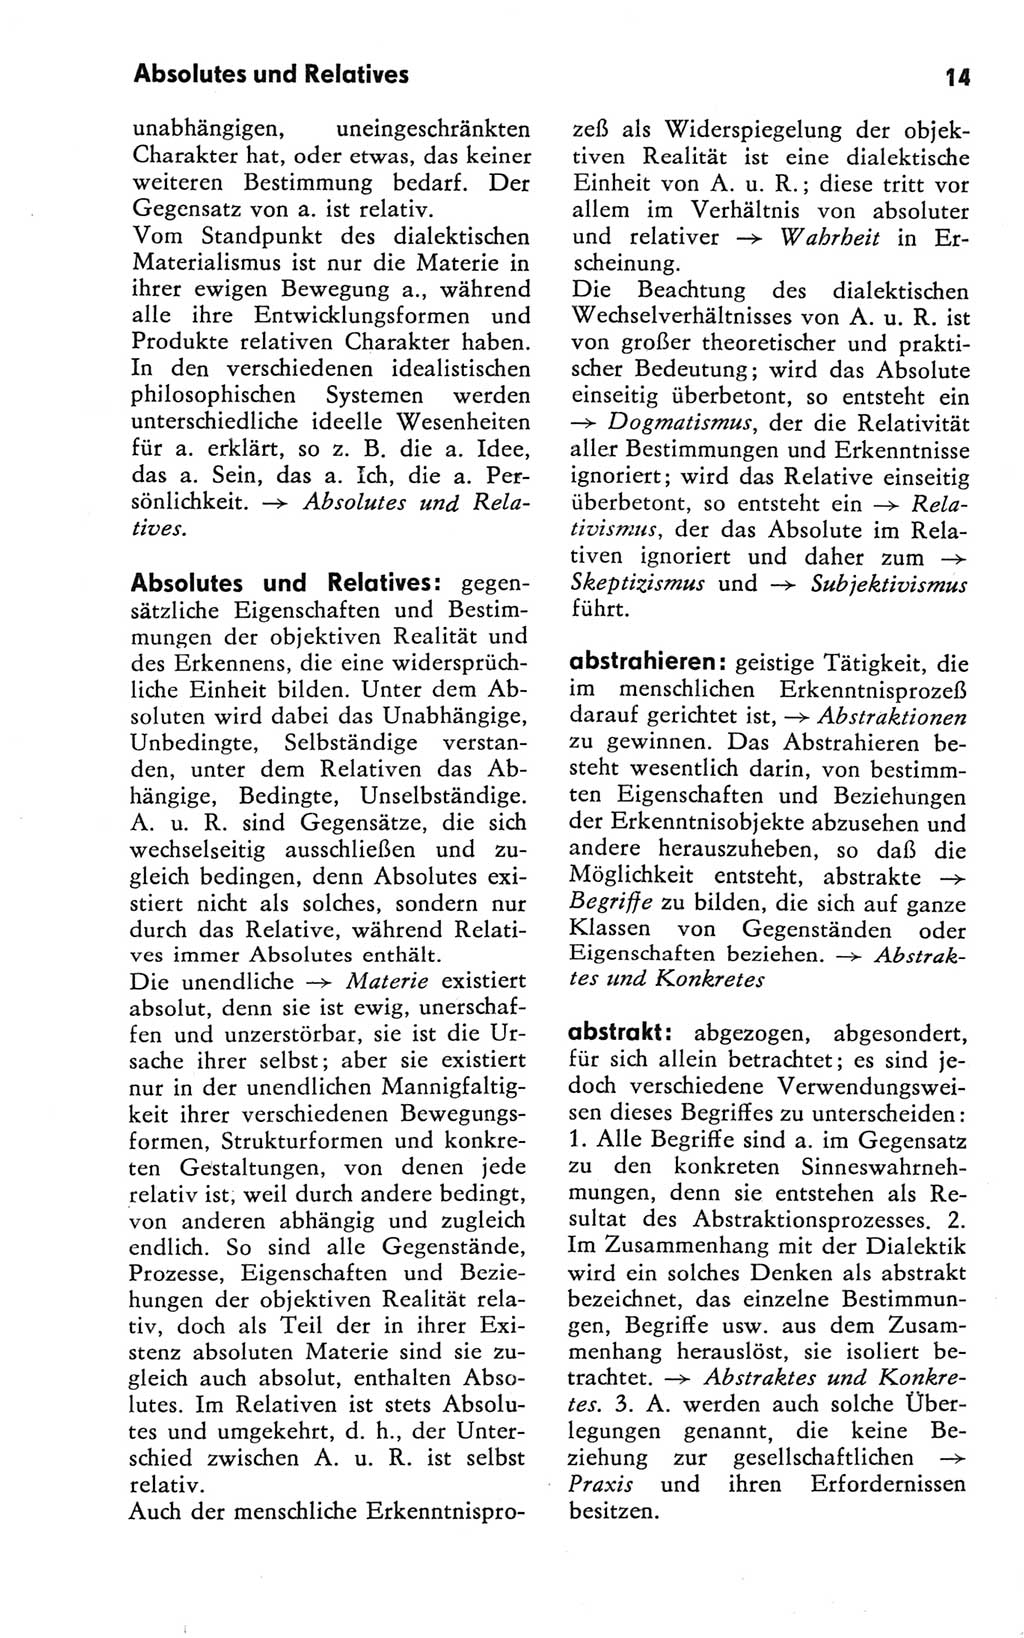 Kleines Wörterbuch der marxistisch-leninistischen Philosophie [Deutsche Demokratische Republik (DDR)] 1981, Seite 14 (Kl. Wb. ML Phil. DDR 1981, S. 14)